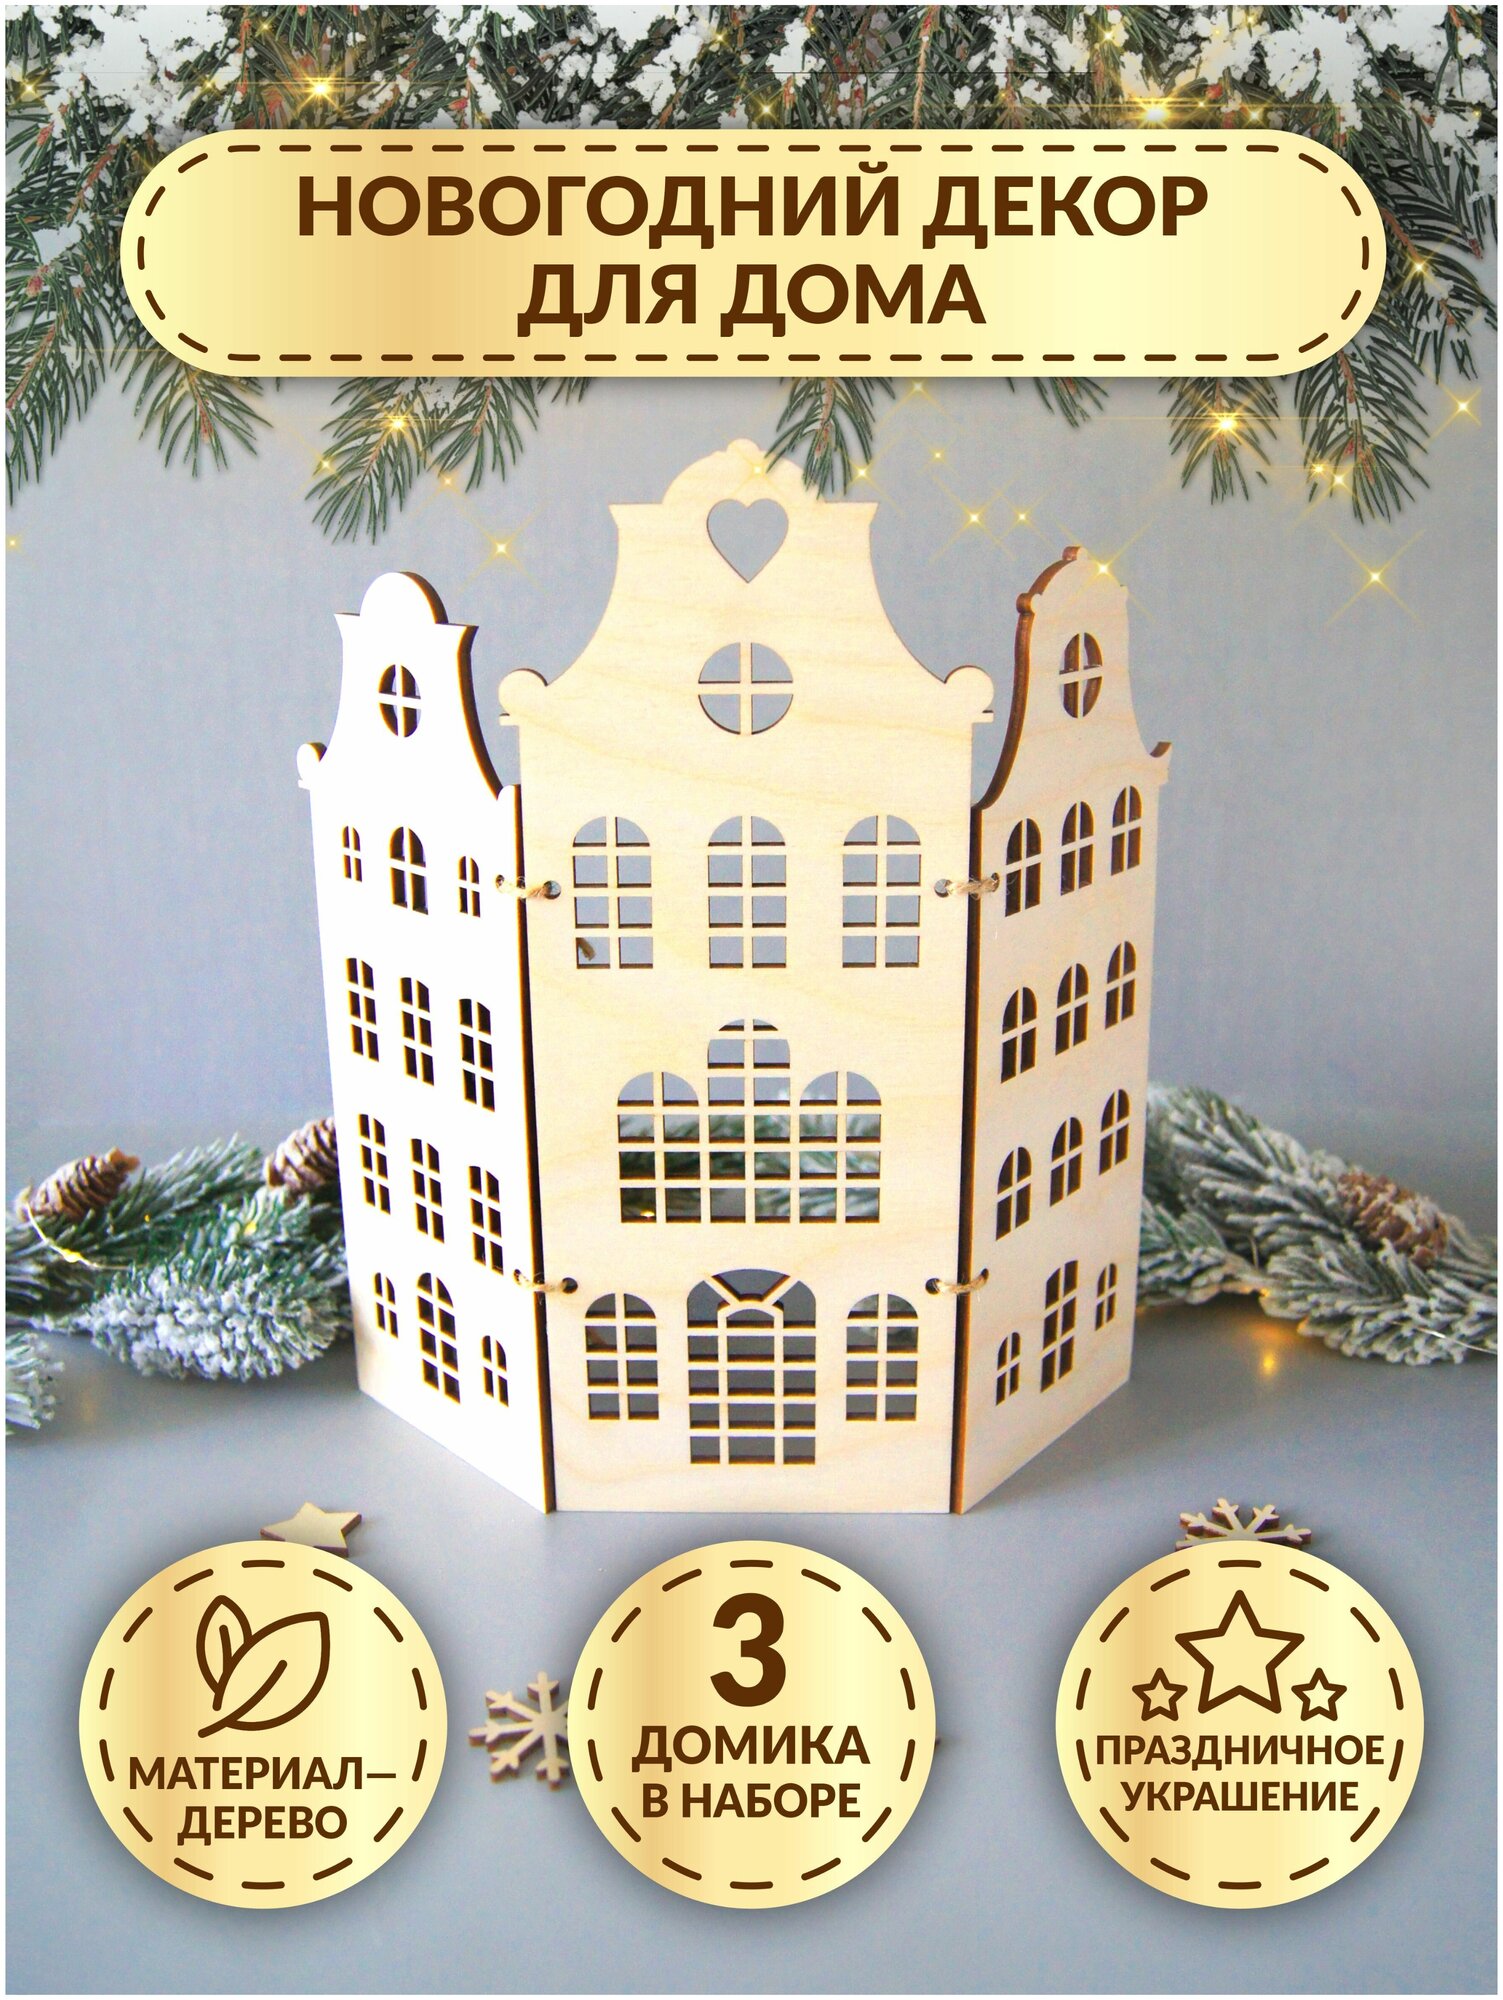 Новогодний декор для дома из дерева / Деревянная настольная композиция на Новый Год / Подарок-конструктор